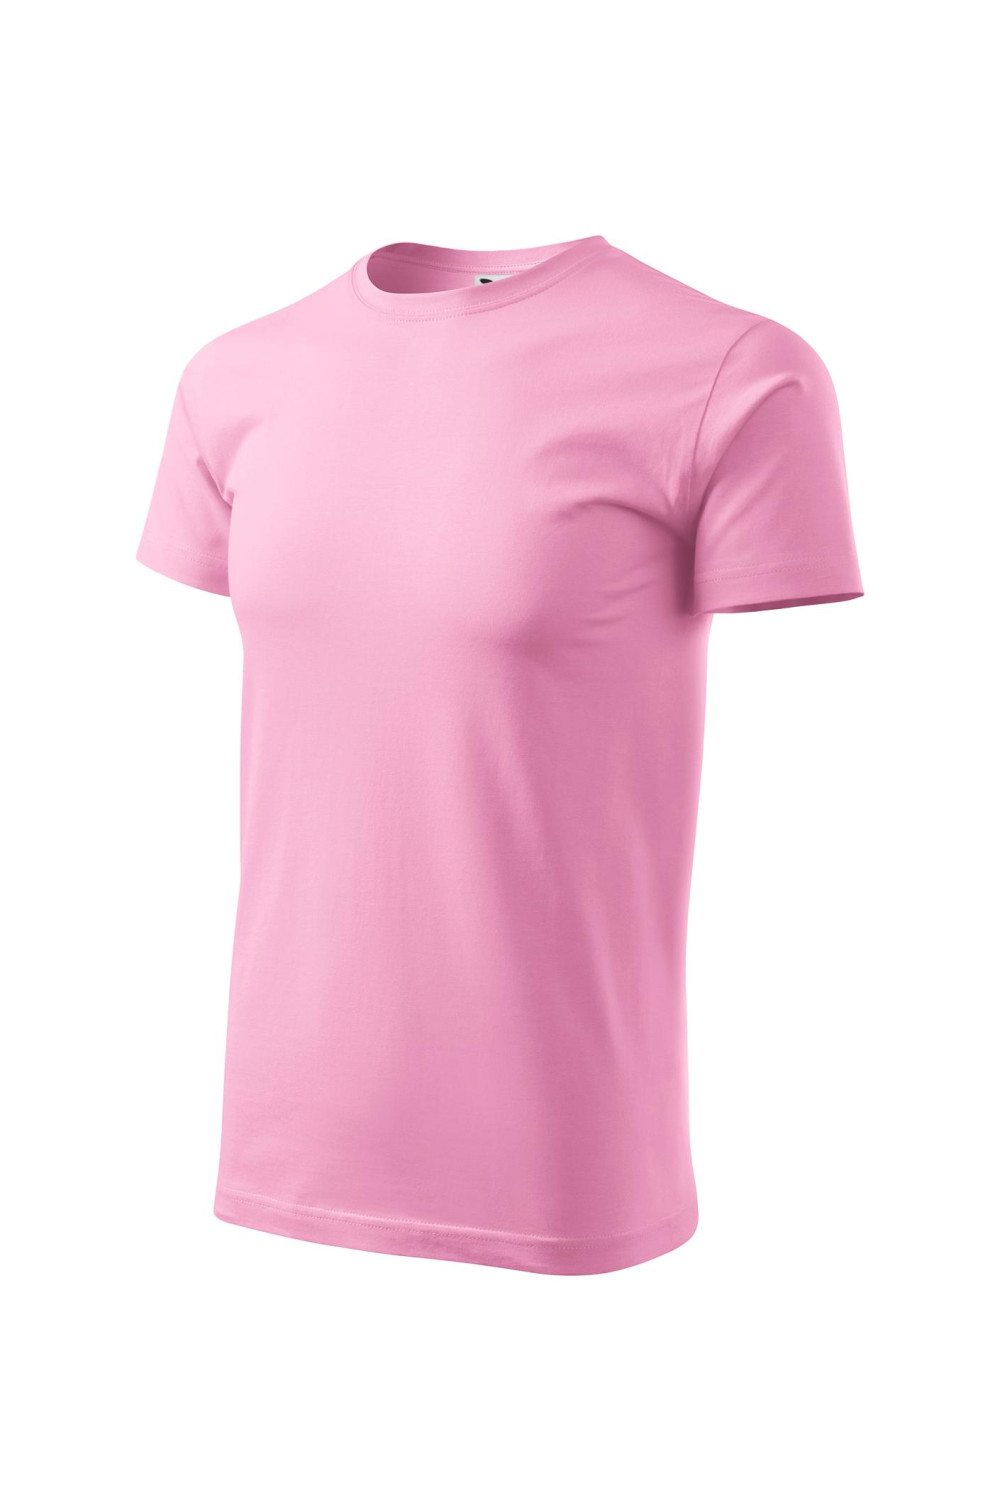 Koszulka męska 100% bawełna BASIC 129  kolor różowy